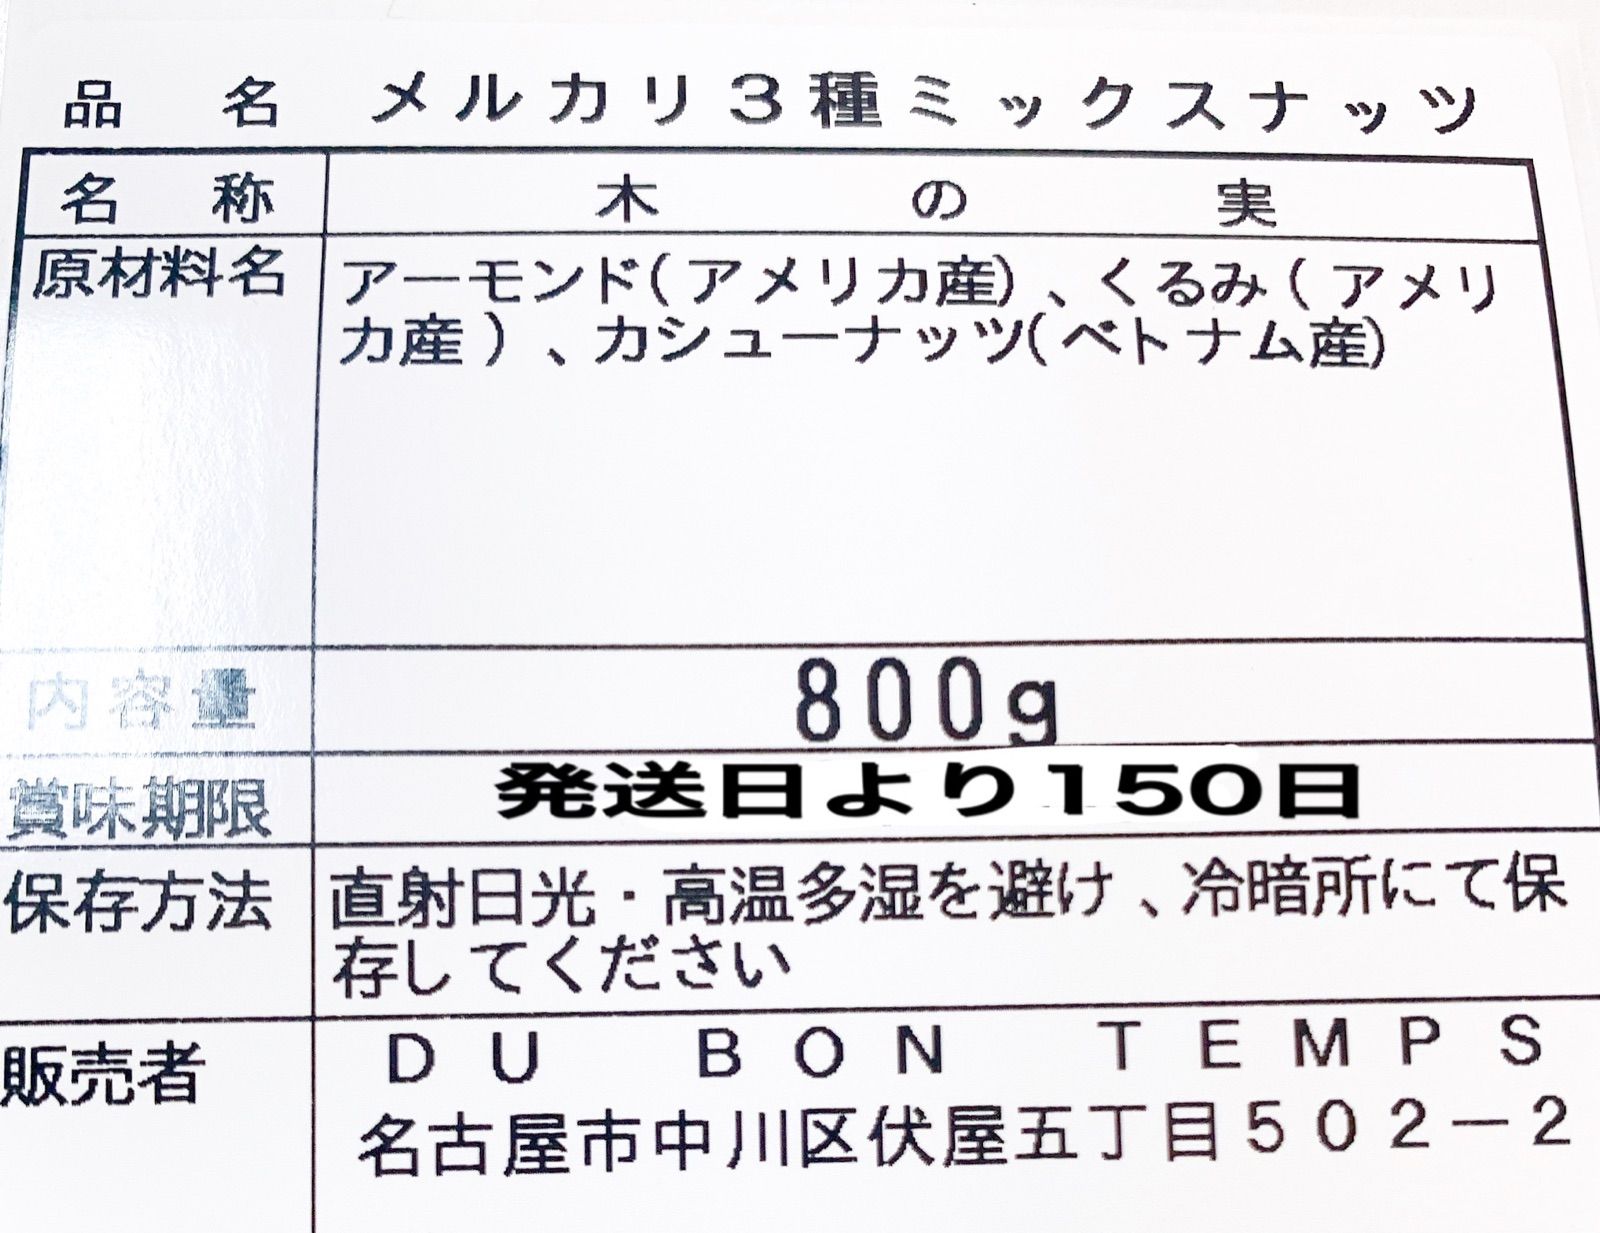 ❤️☘️ NEW3種ミックスナッツ800g ☘️❤️素焼きアーモンドライフルーツ-2